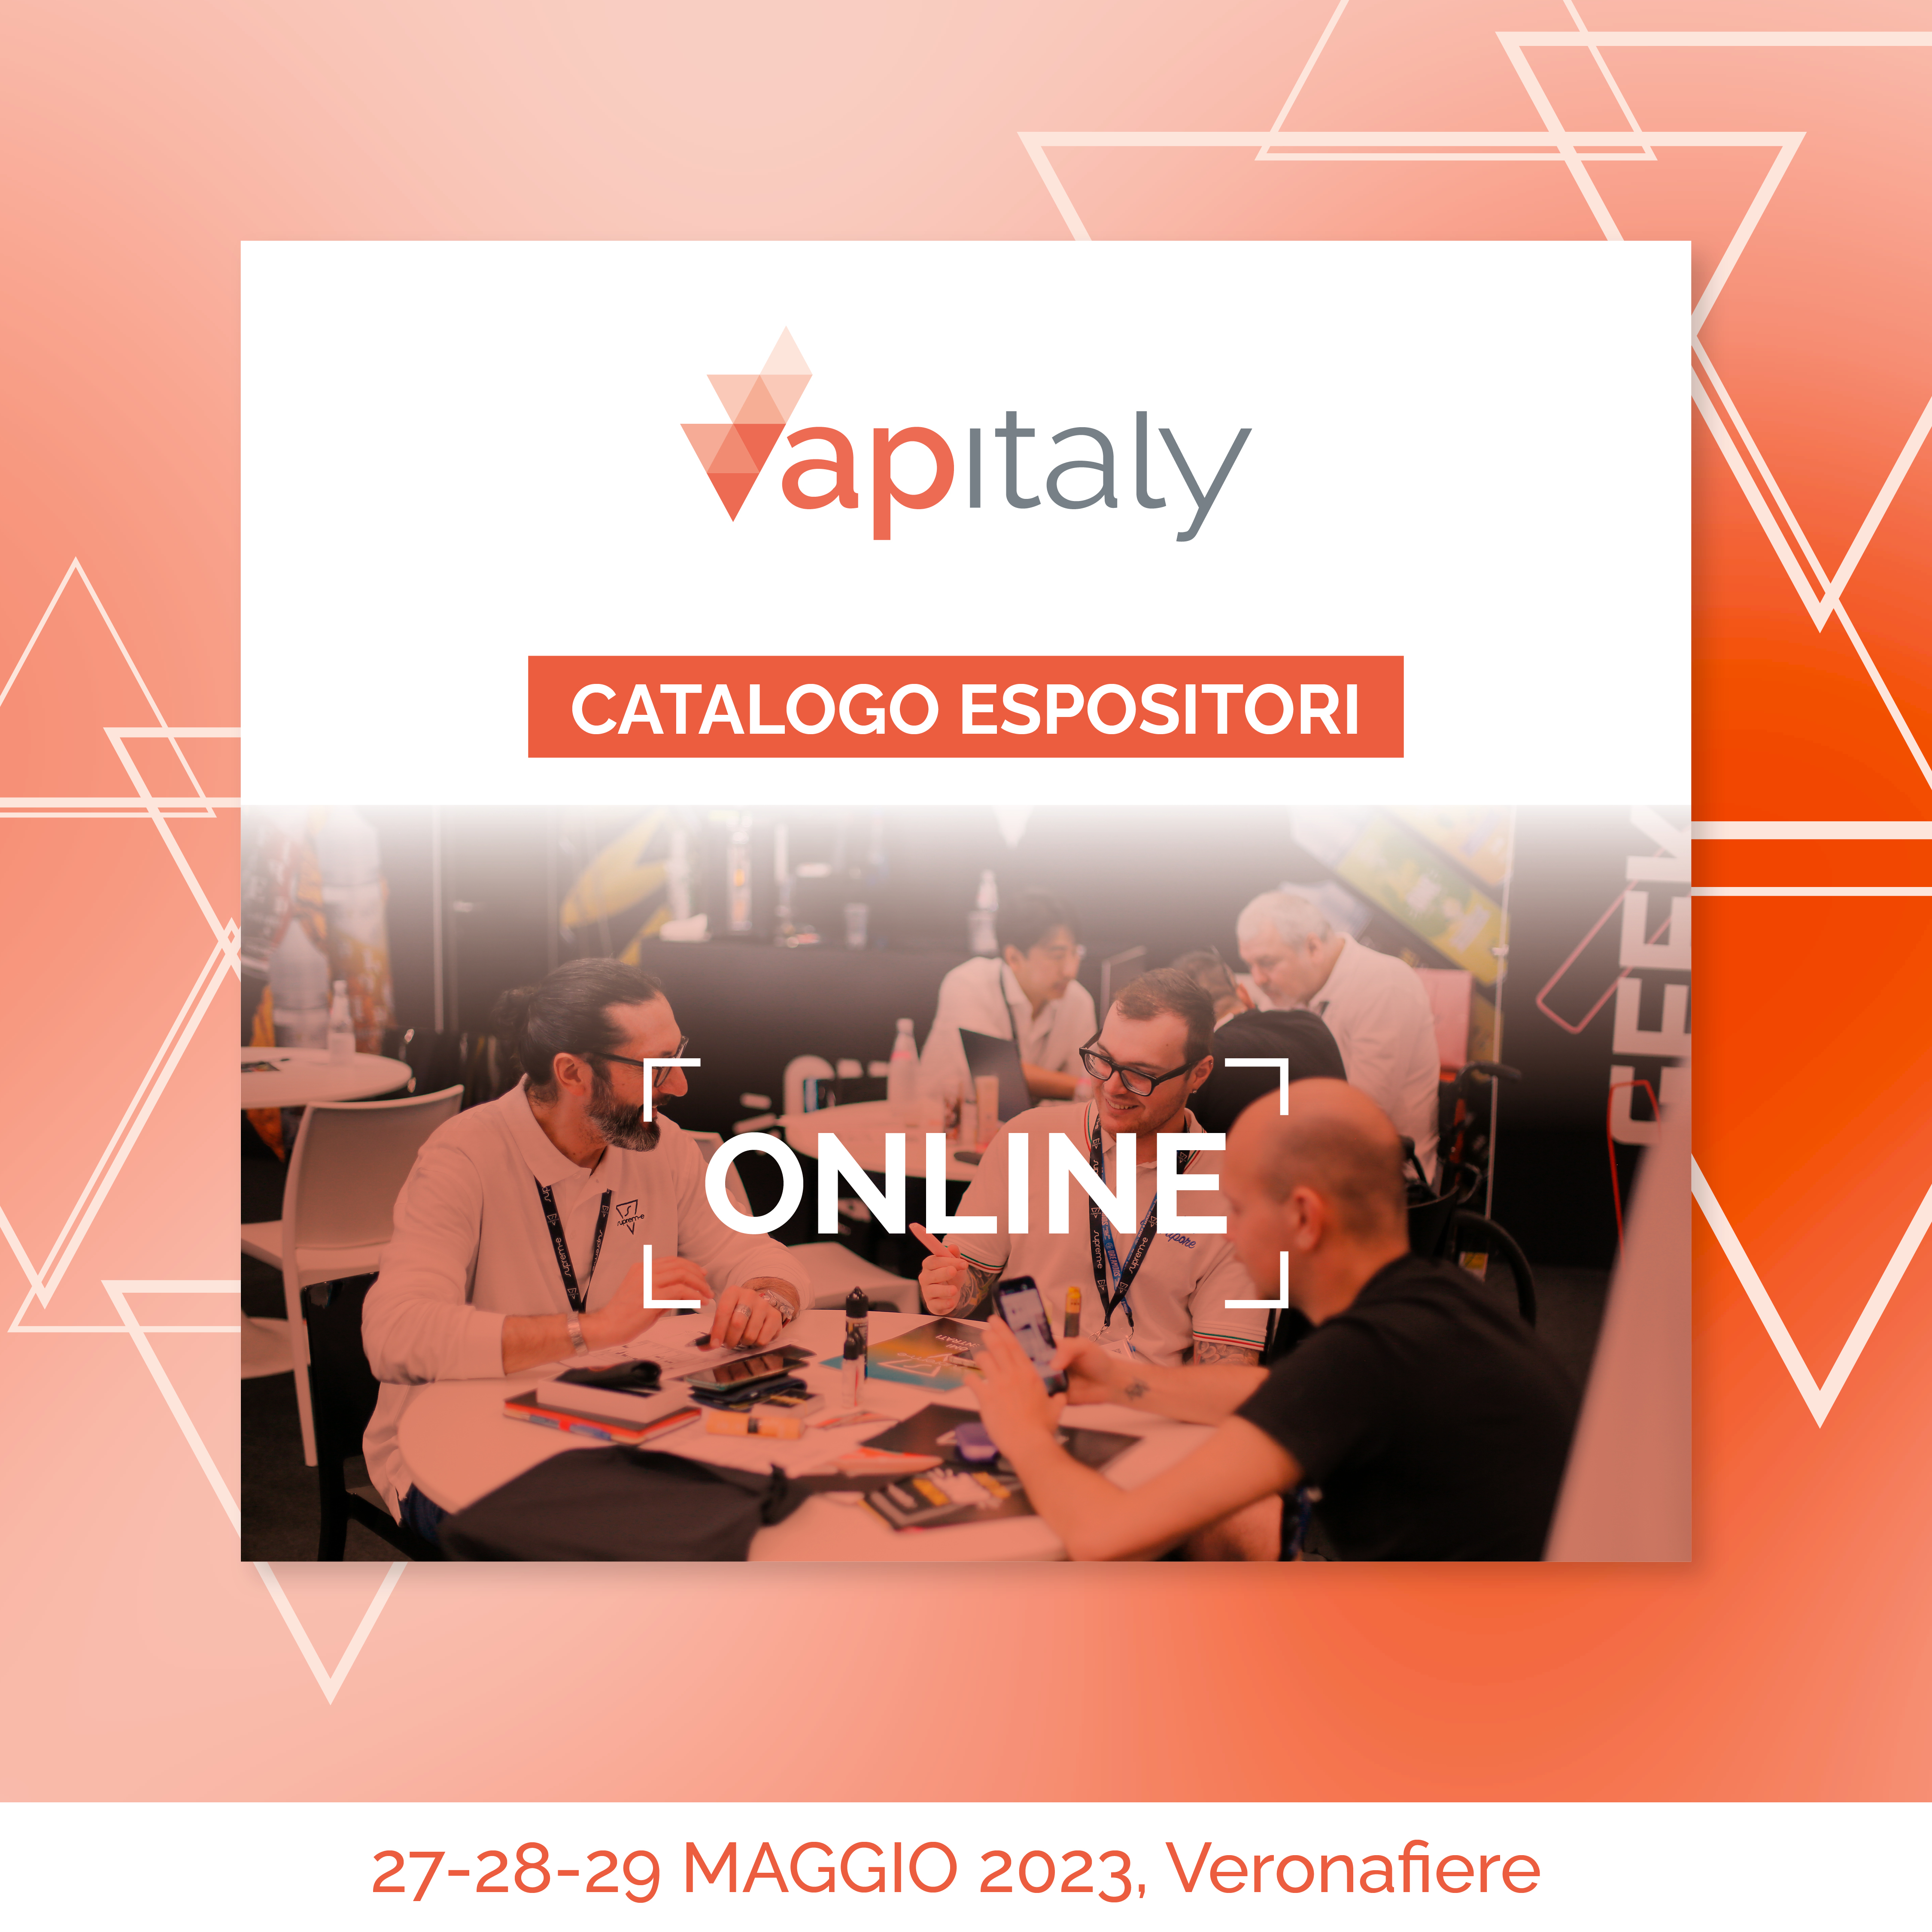 Online il Catalogo Espositori di Vapitaly 2023